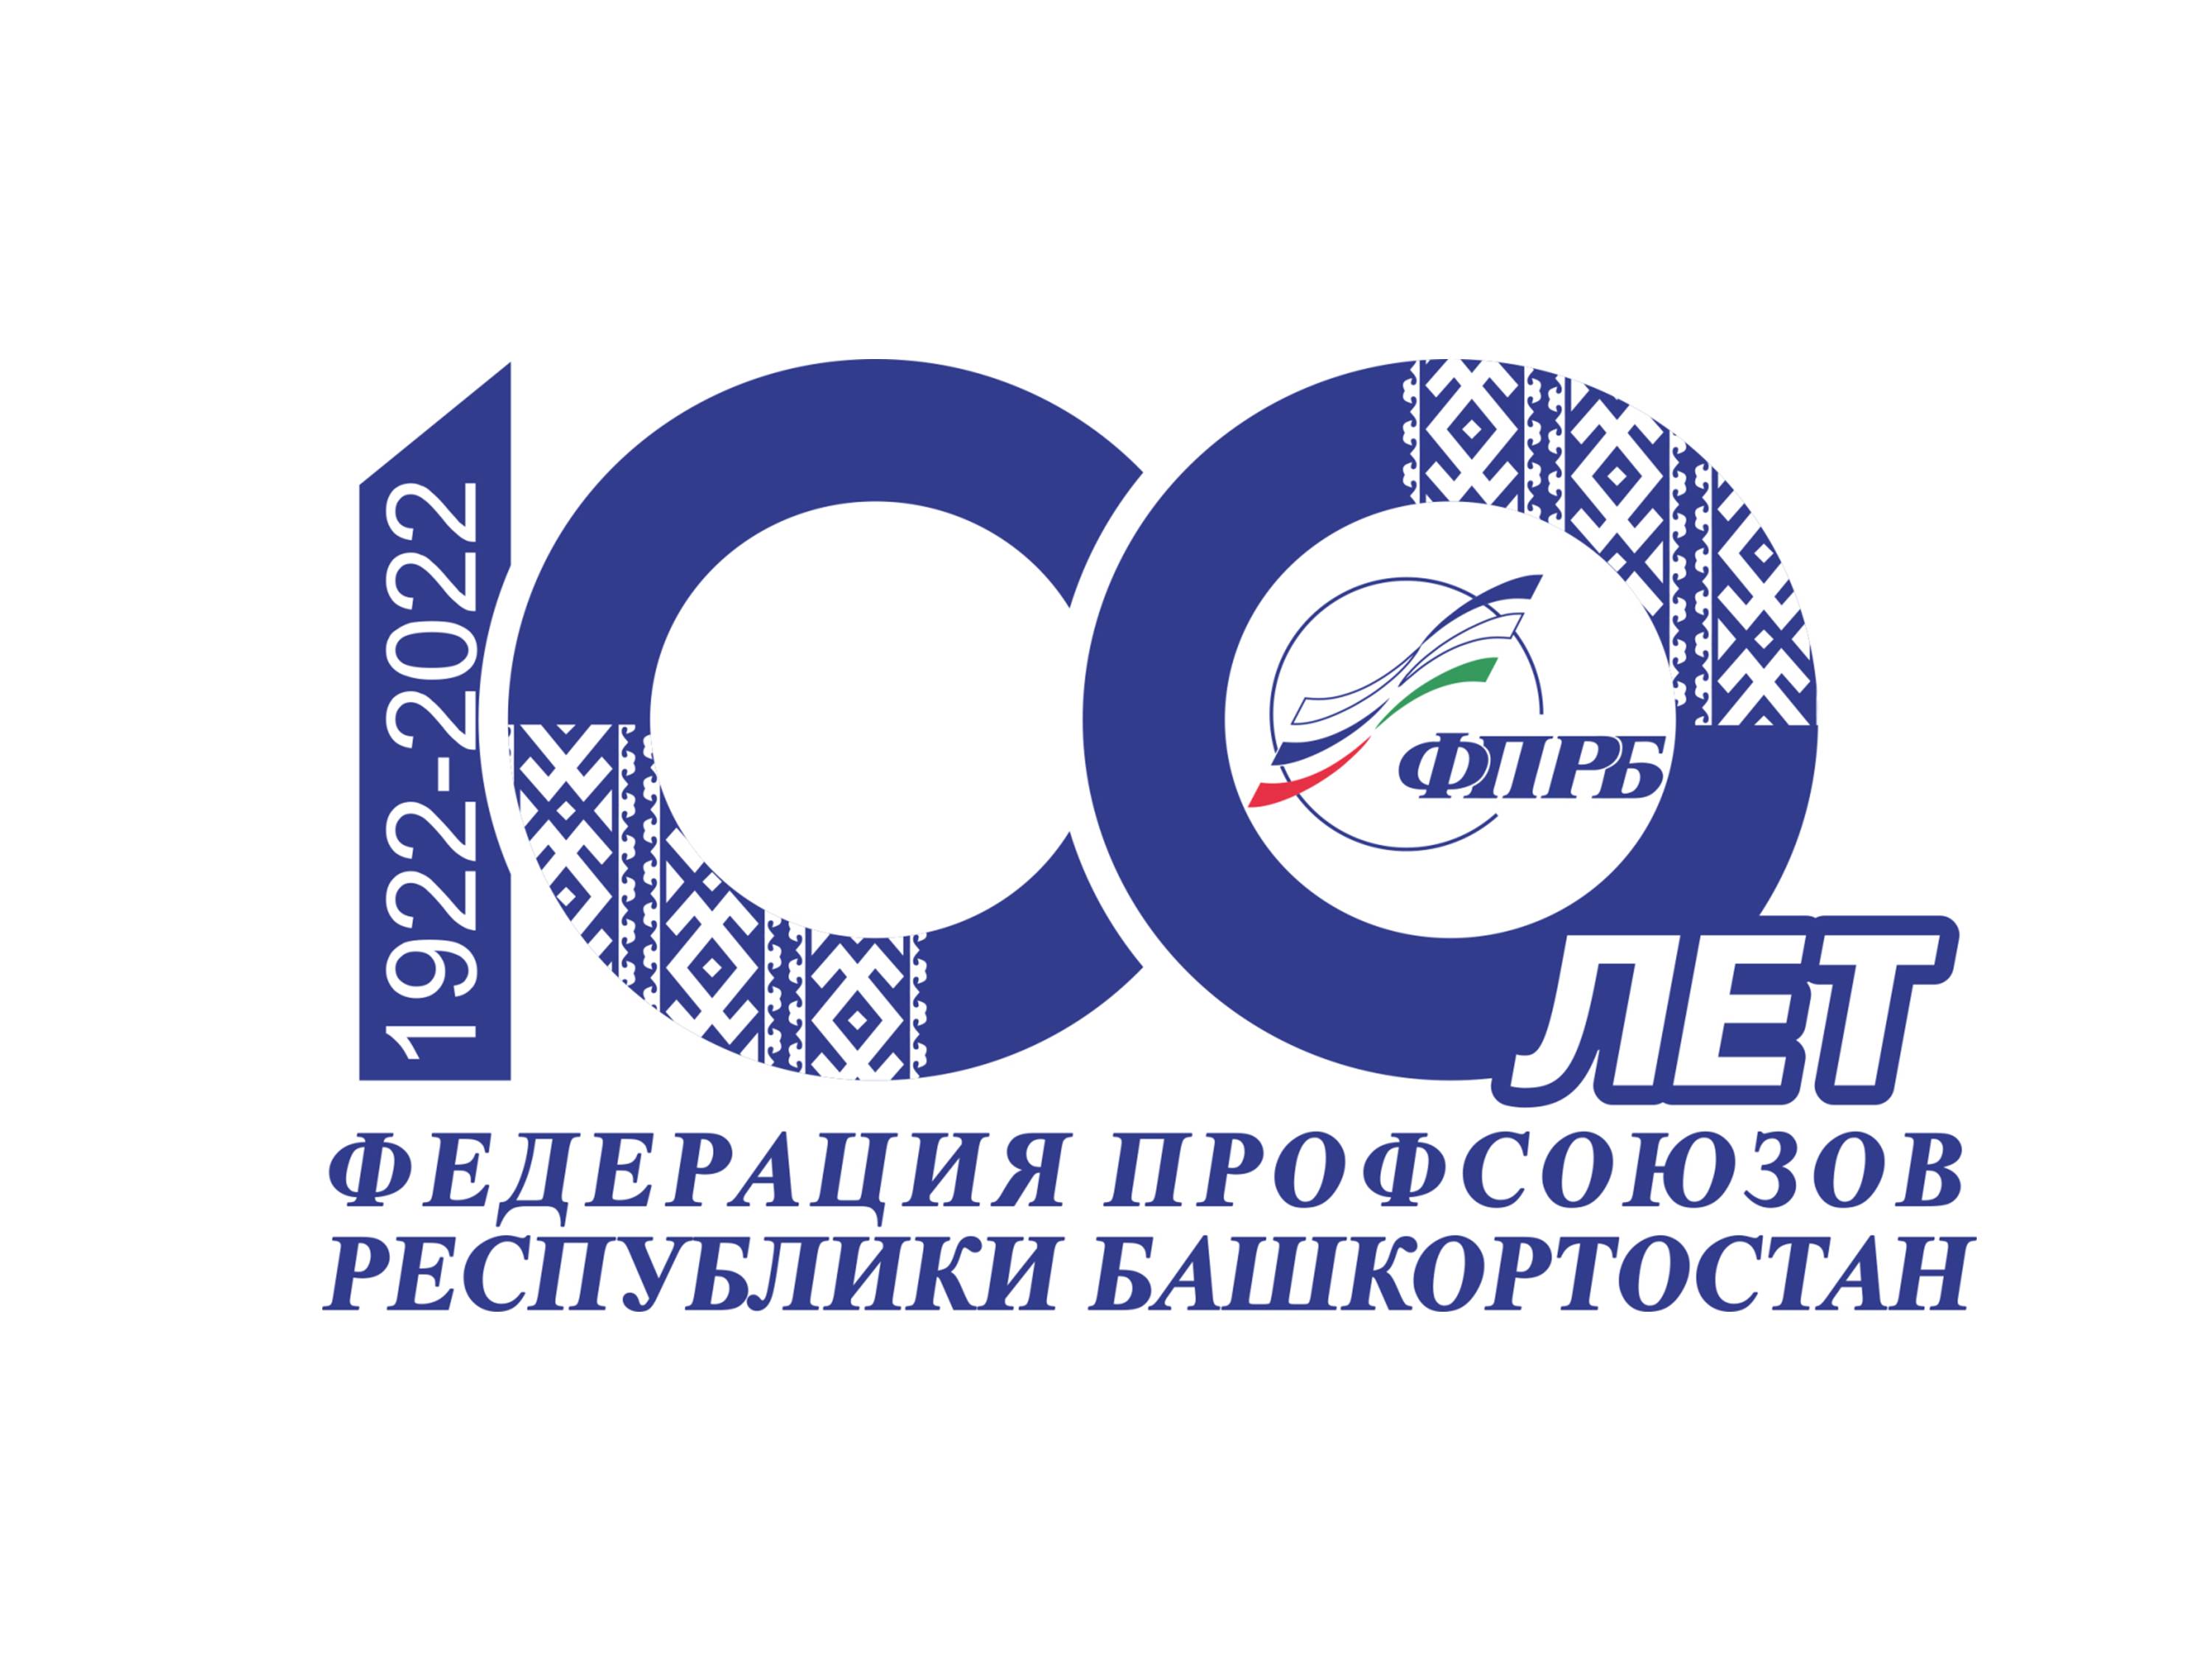 Поздравляем со 100-летием образования Федерации профсоюзов Республики Башкортостан!